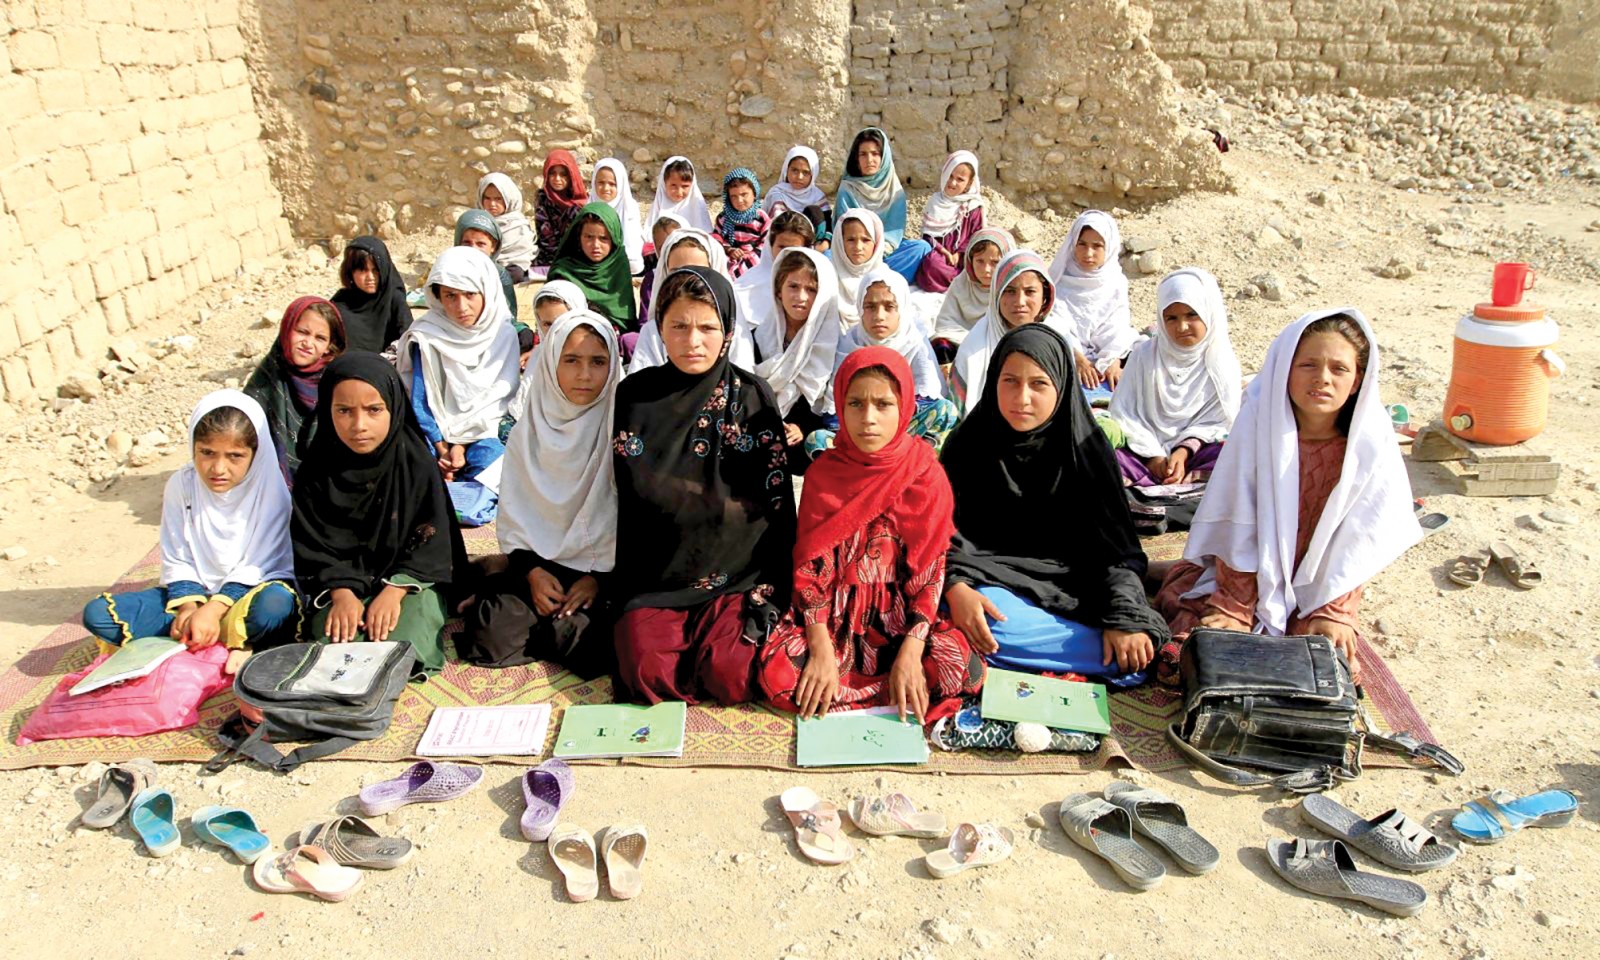  Một lớp học ngoài trời của nữ sinh Afghanistan. Ảnh: Ariana News